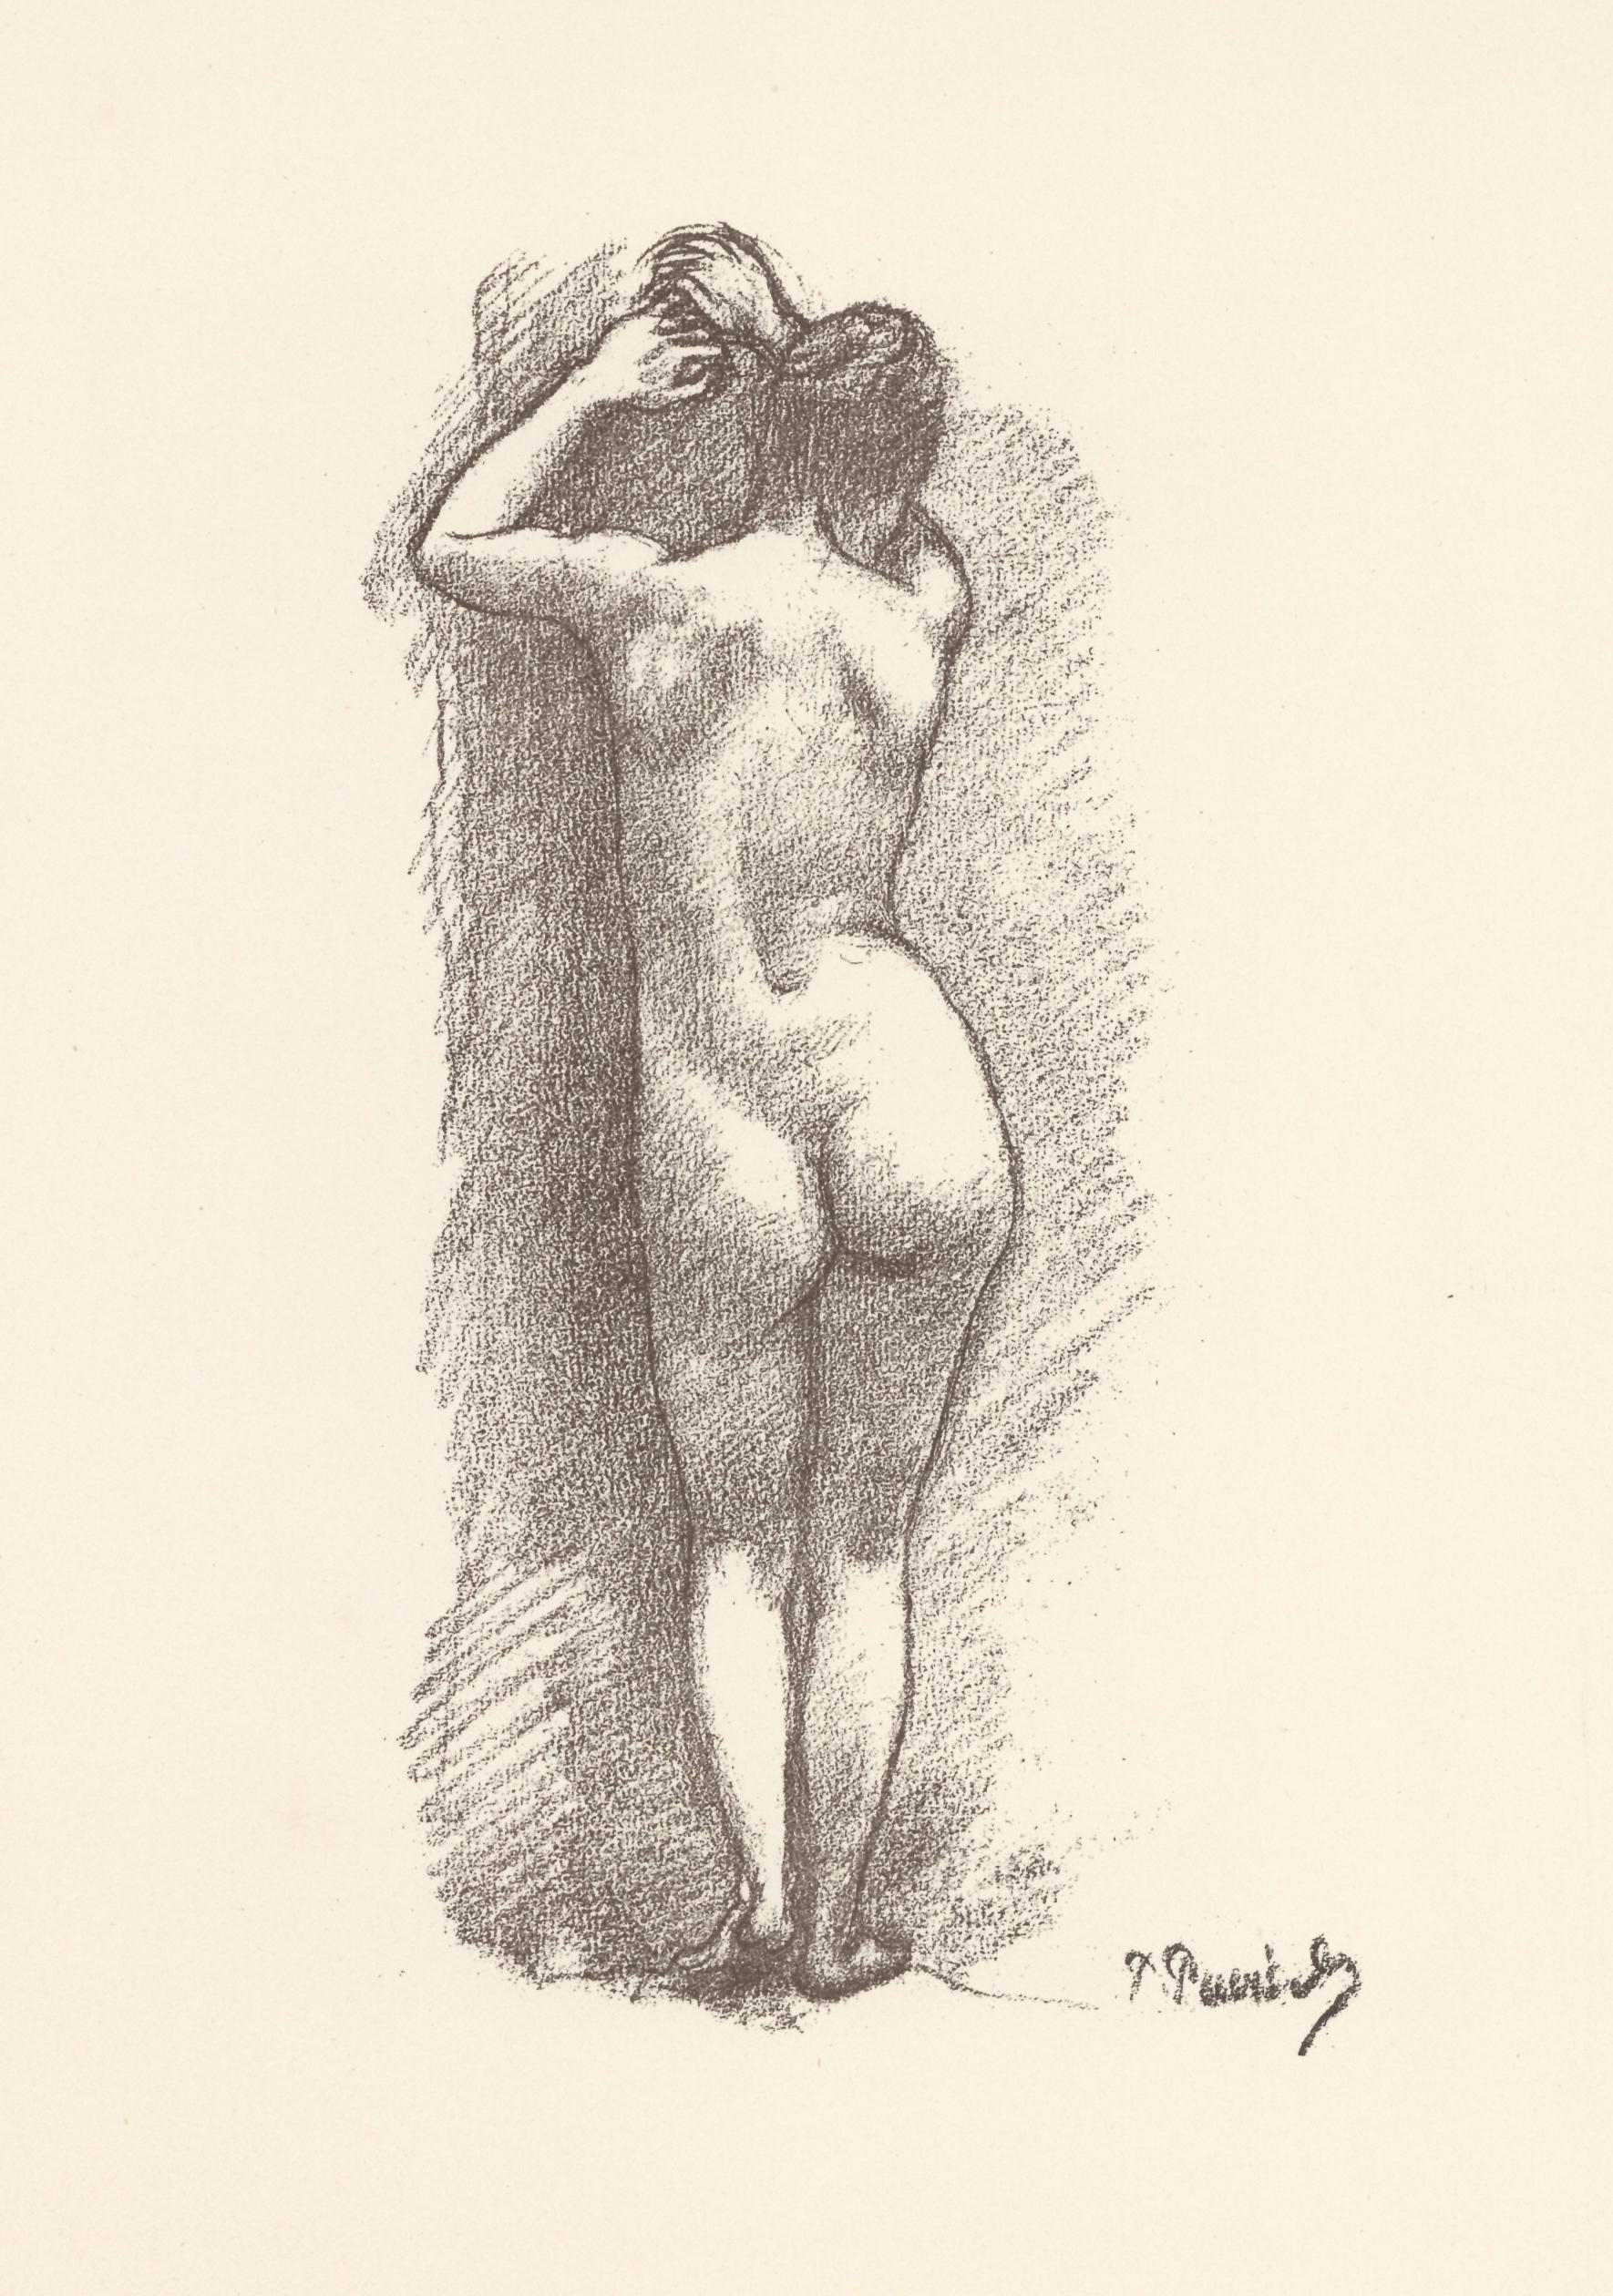 Moyen : lithographie. Cette impression est tirée du rare portfolio de 1897 "Art et Nature" de Léon Roger-Miles, publié à Paris par Boudet dans une édition de 525 exemplaires. Imprimé sur du papier vélin du Marais, le format de la feuille est de 12